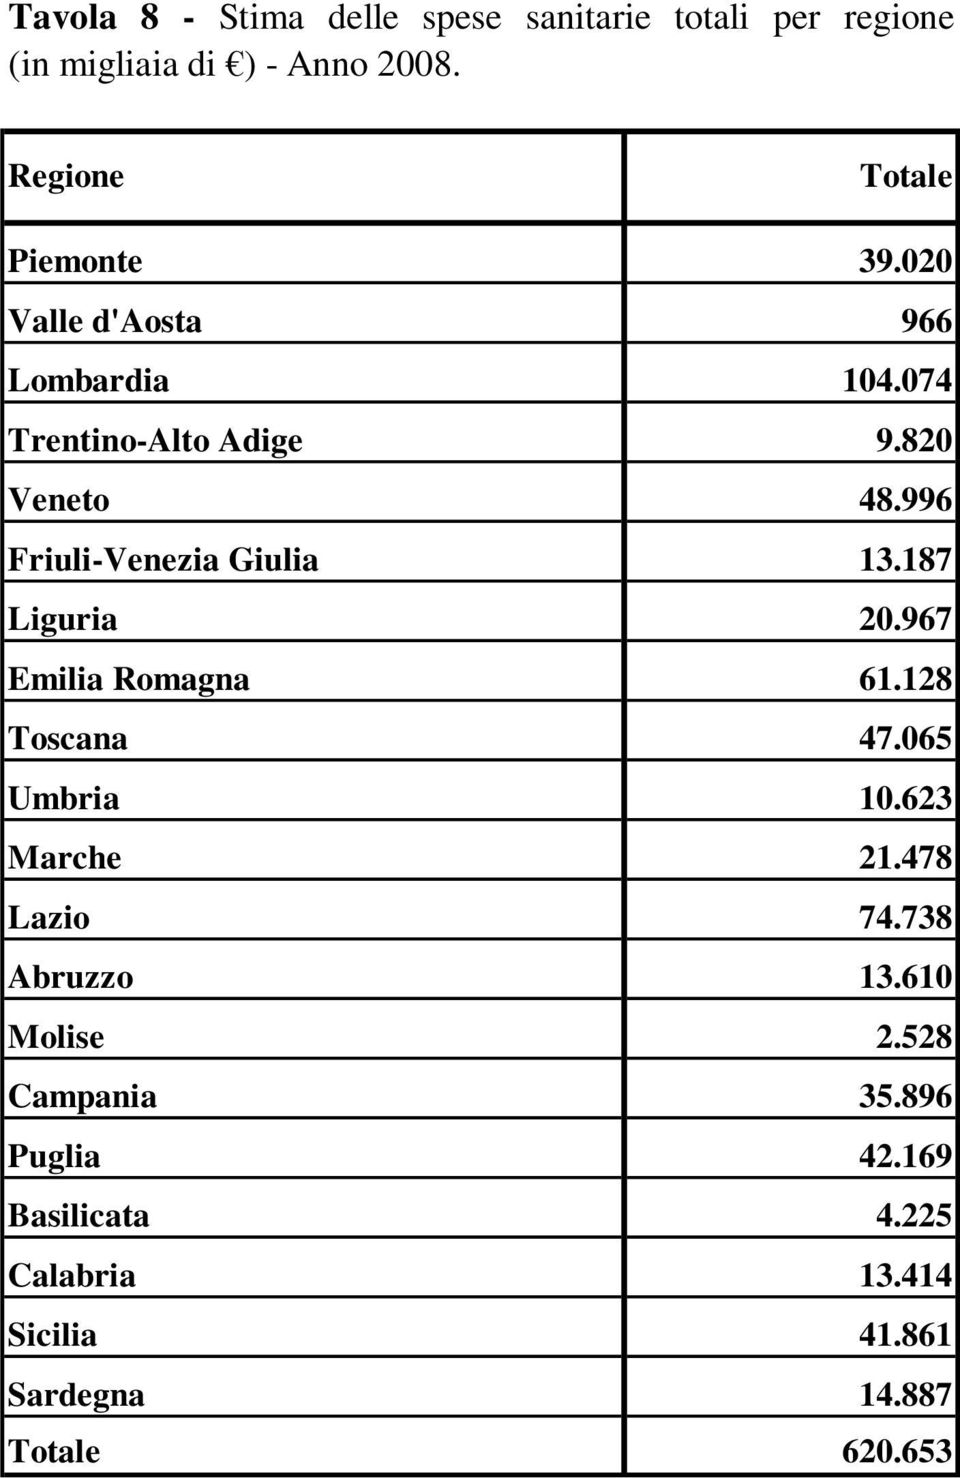 996 Friuli-Venezia Giulia 13.187 Liguria 20.967 Emilia Romagna 61.128 Toscana 47.065 Umbria 10.623 Marche 21.